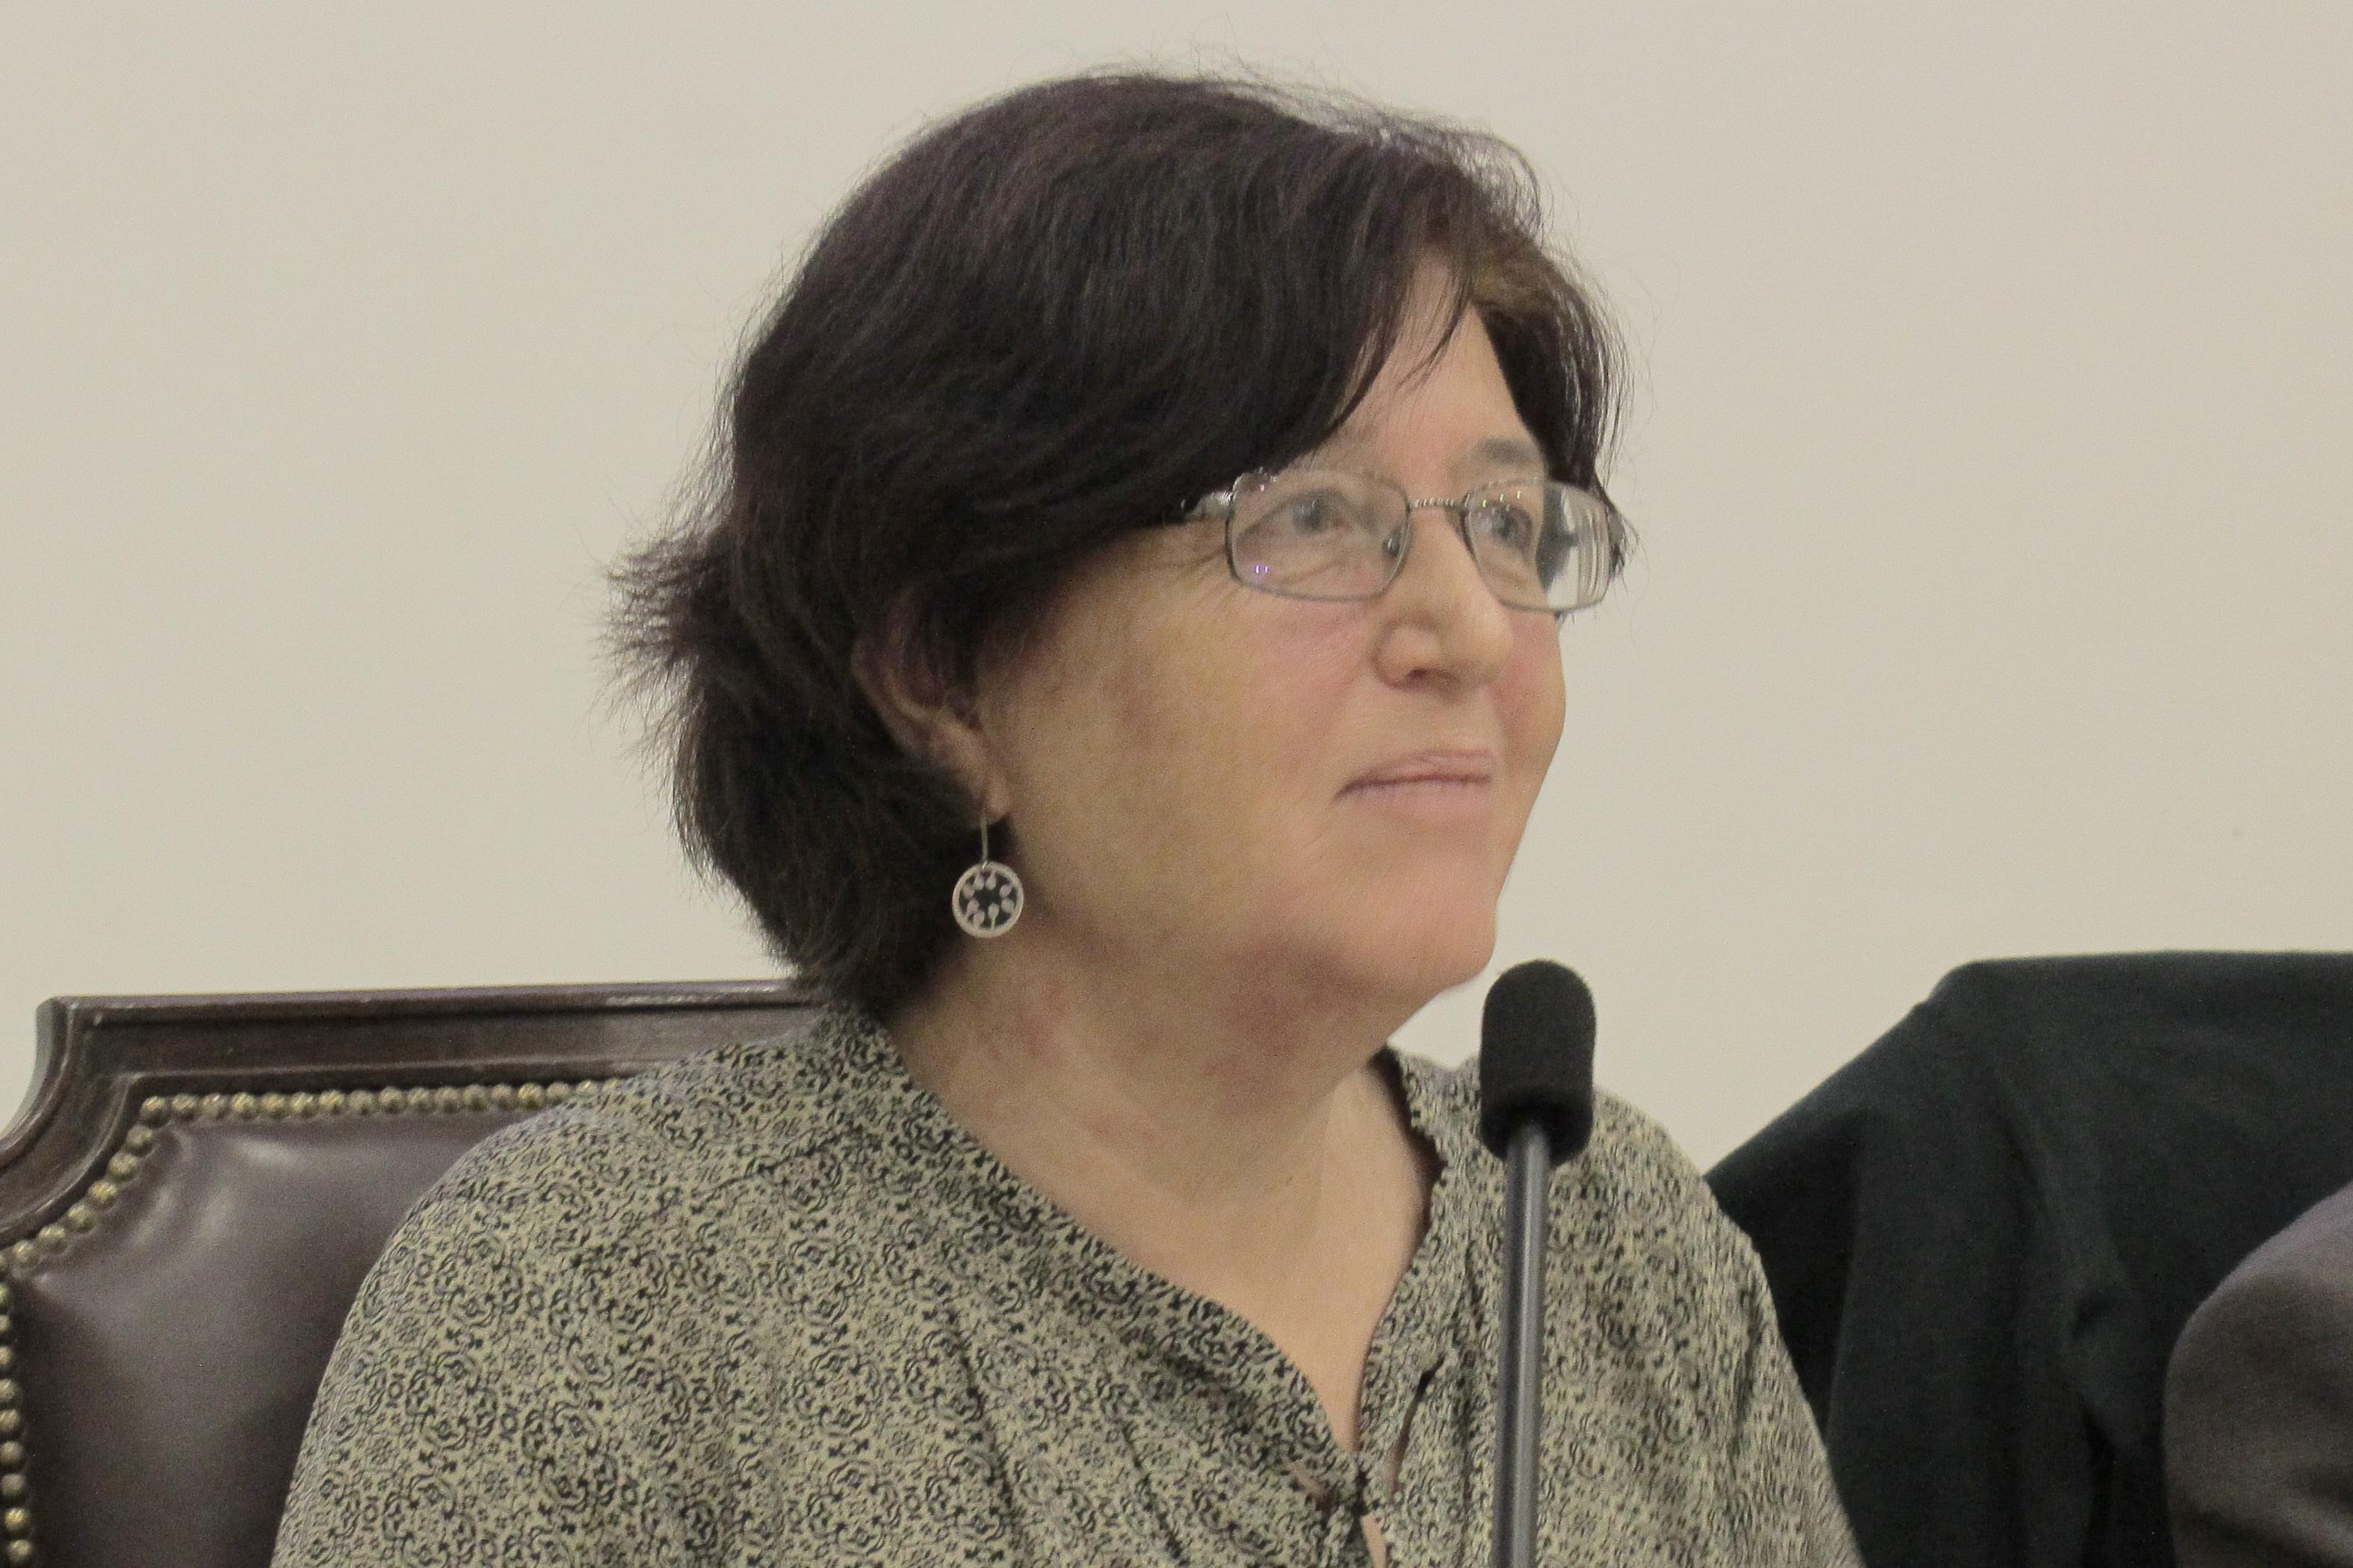  Prof. Jacqueline Gysling, consejera del Consejo Nacional de Educación.